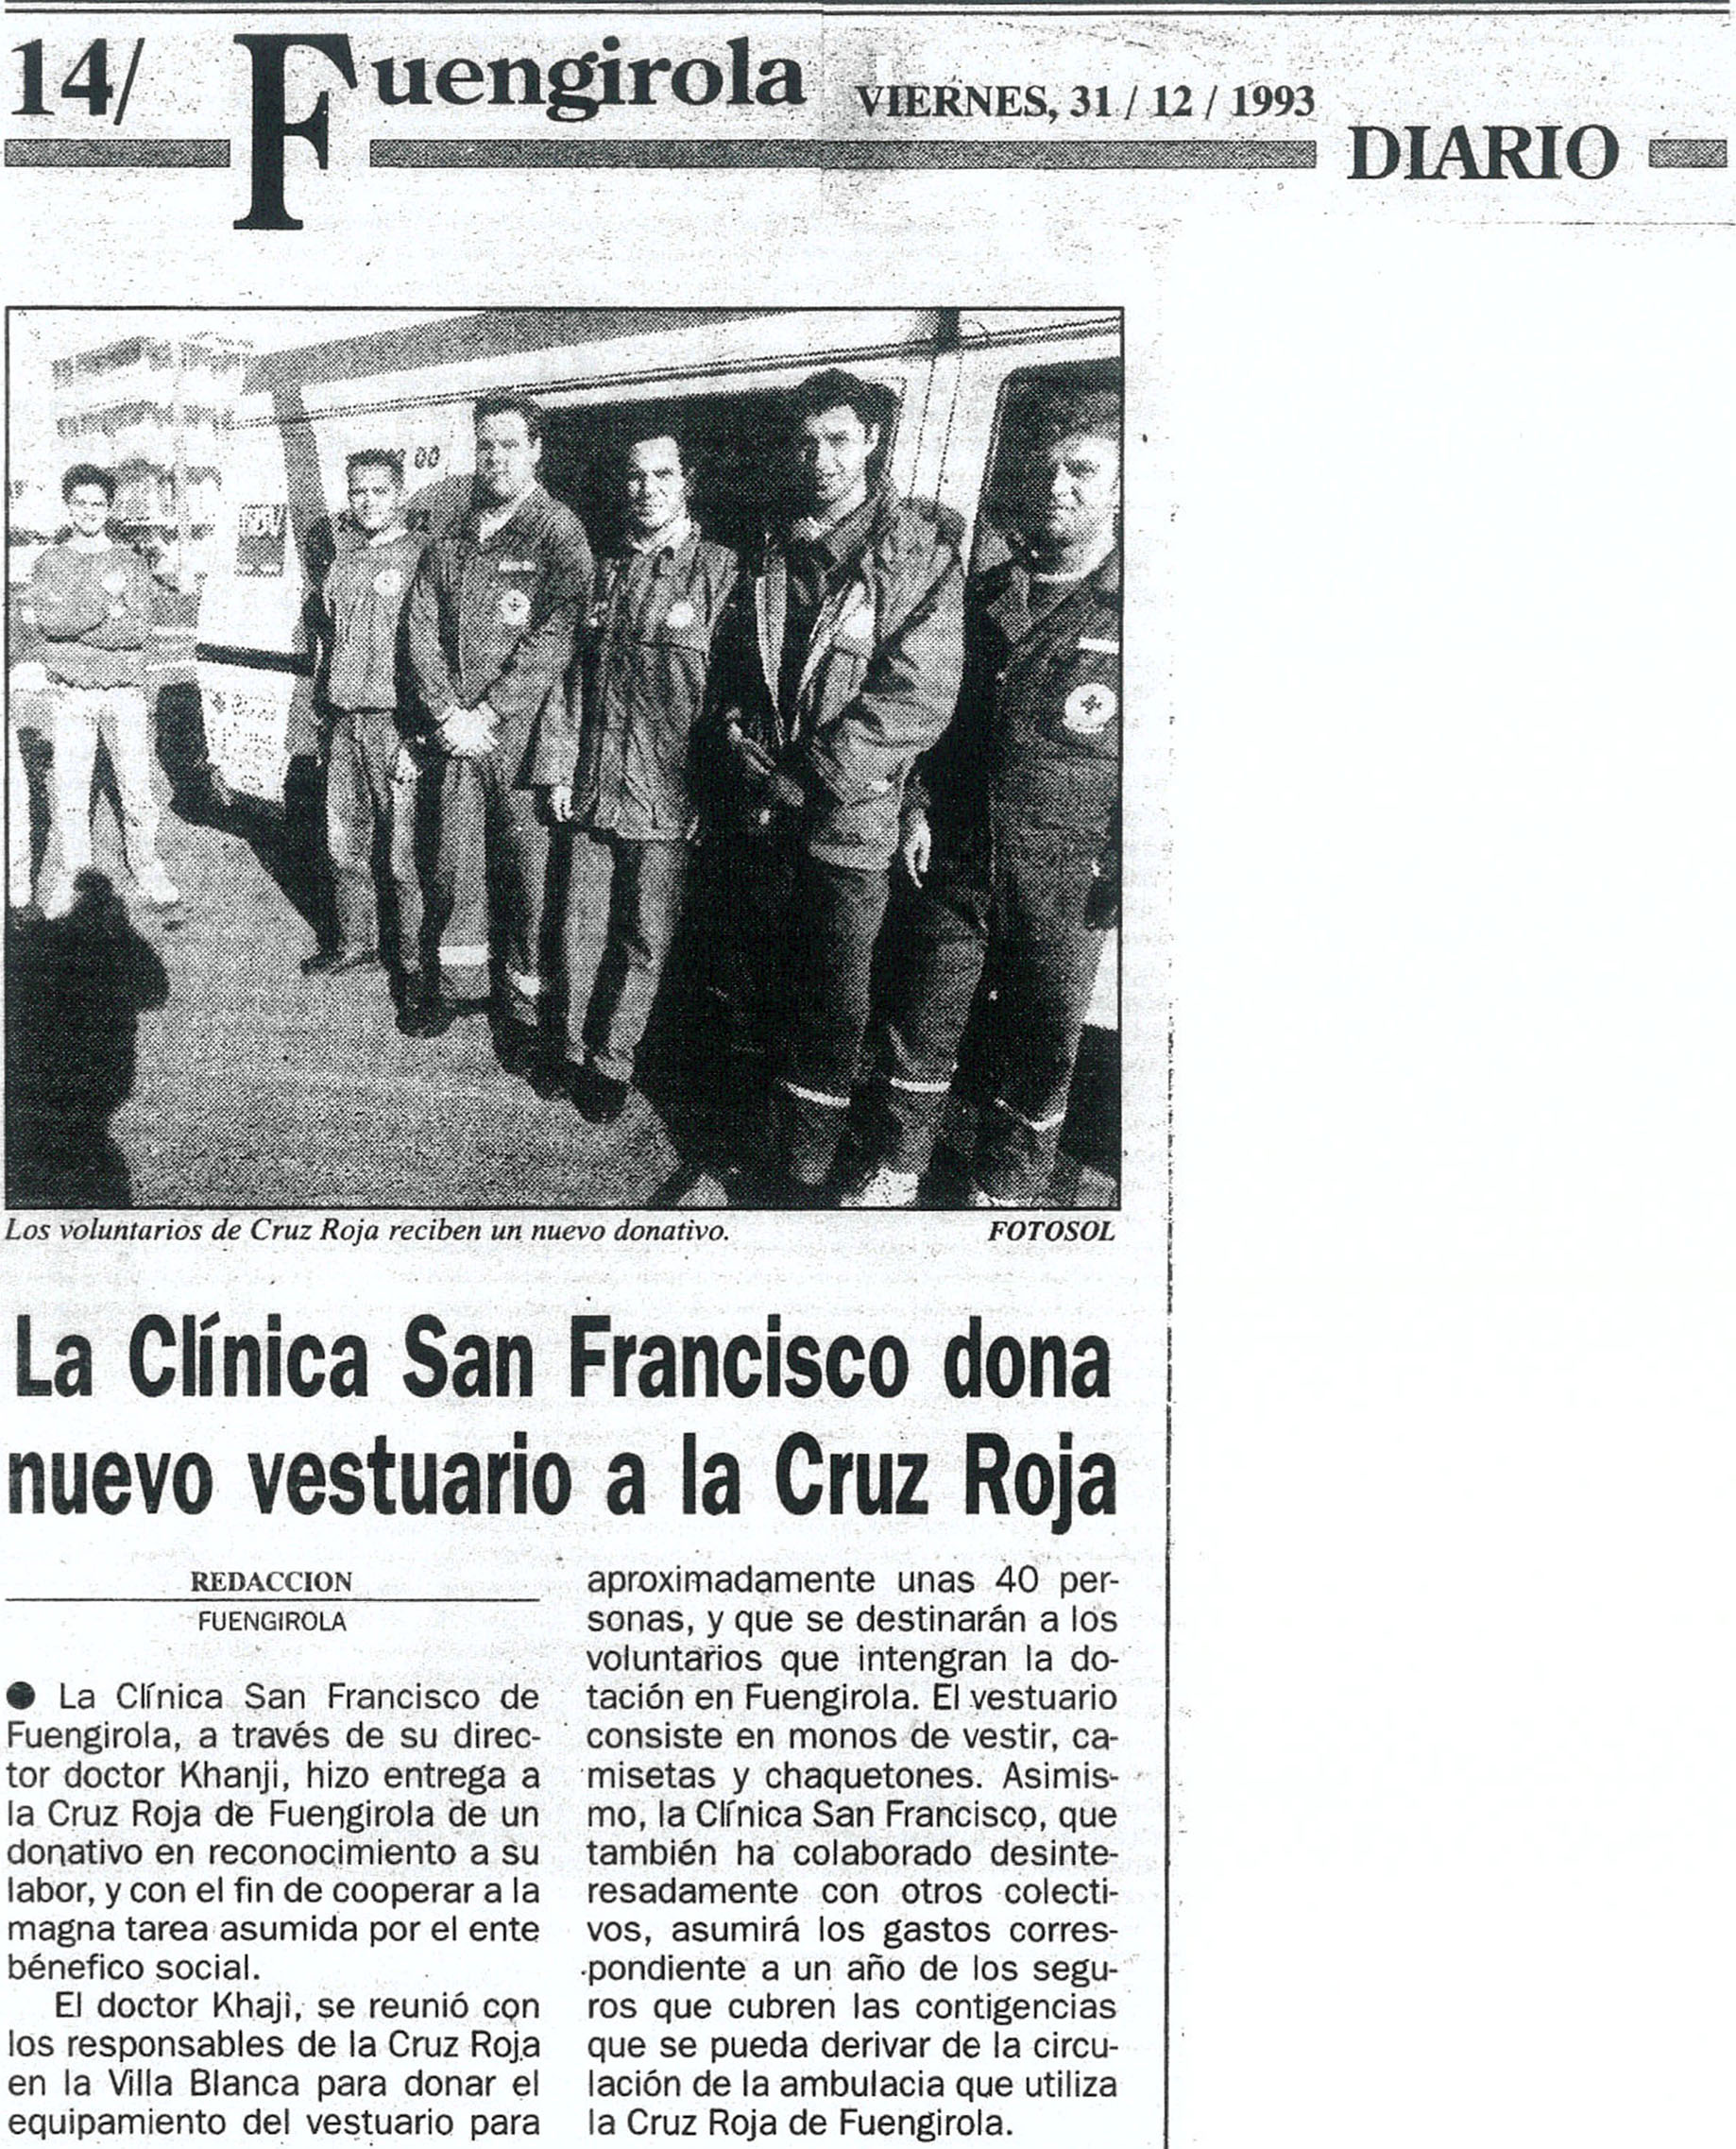 La clínica San Franscico dona nuevo vestuario a la Cruz Roja